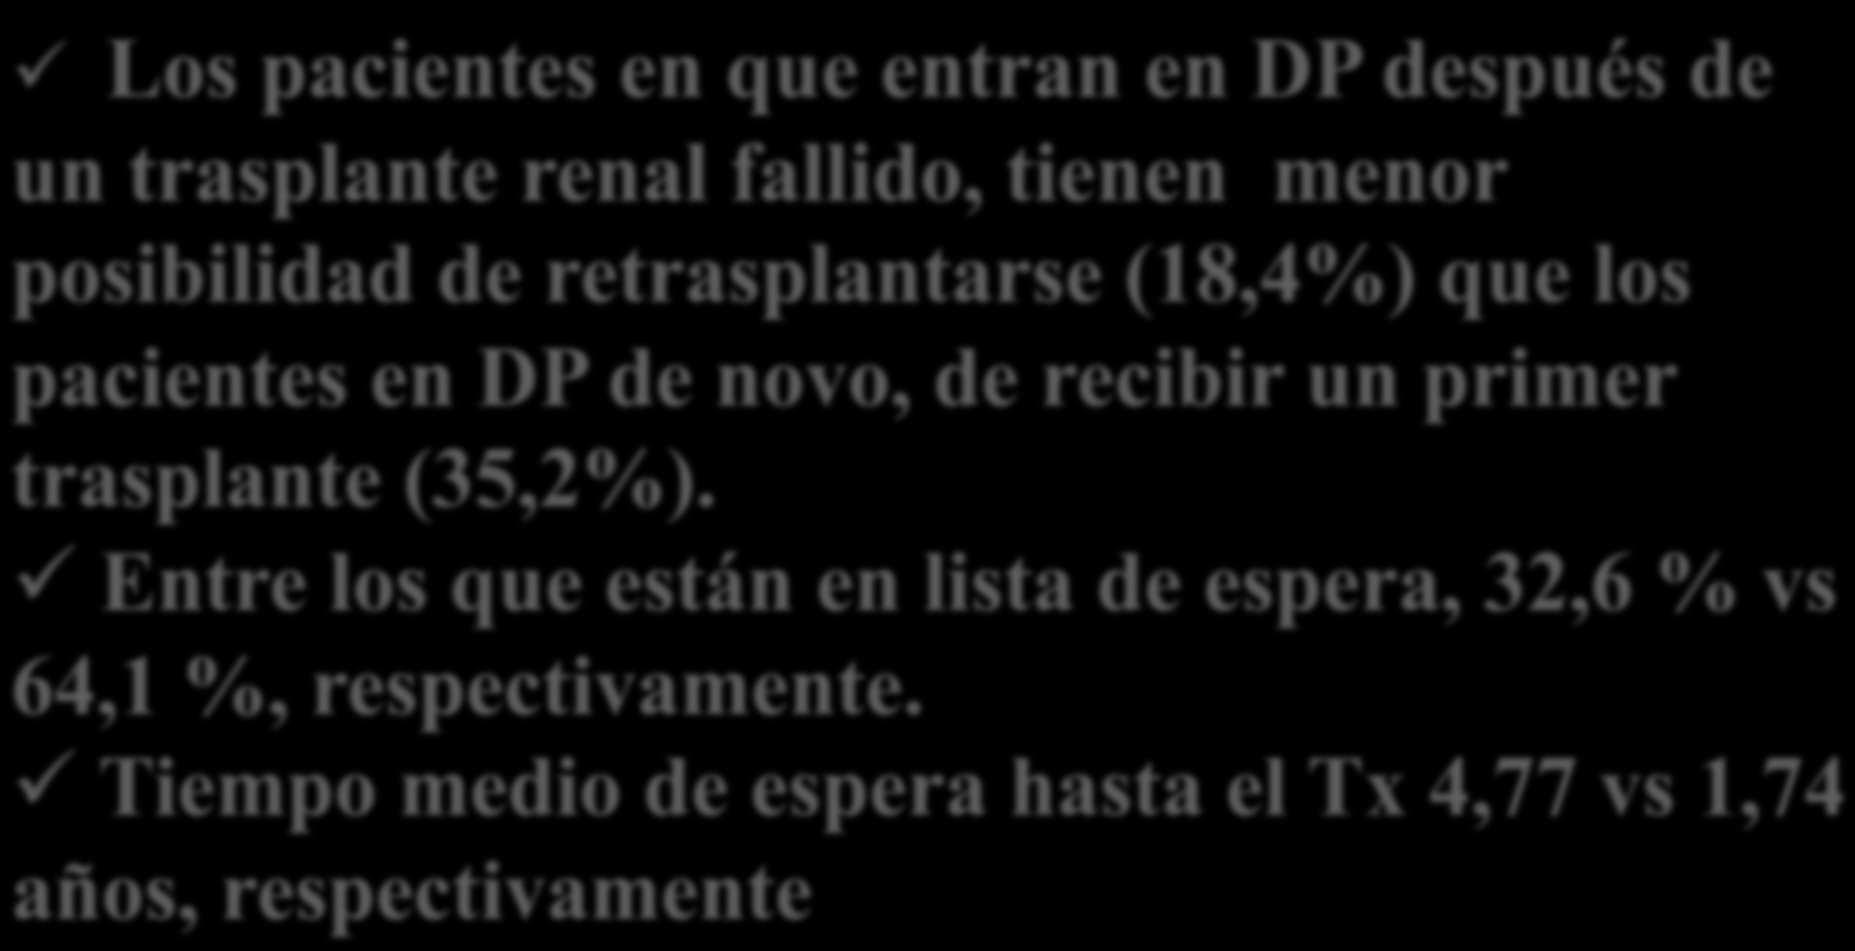 Posibilidad de Tx Los pacientes en que entran en DP después de un trasplante renal fallido, tienen menor posibilidad de retrasplantarse (18,4%) que los pacientes en DP de novo, de